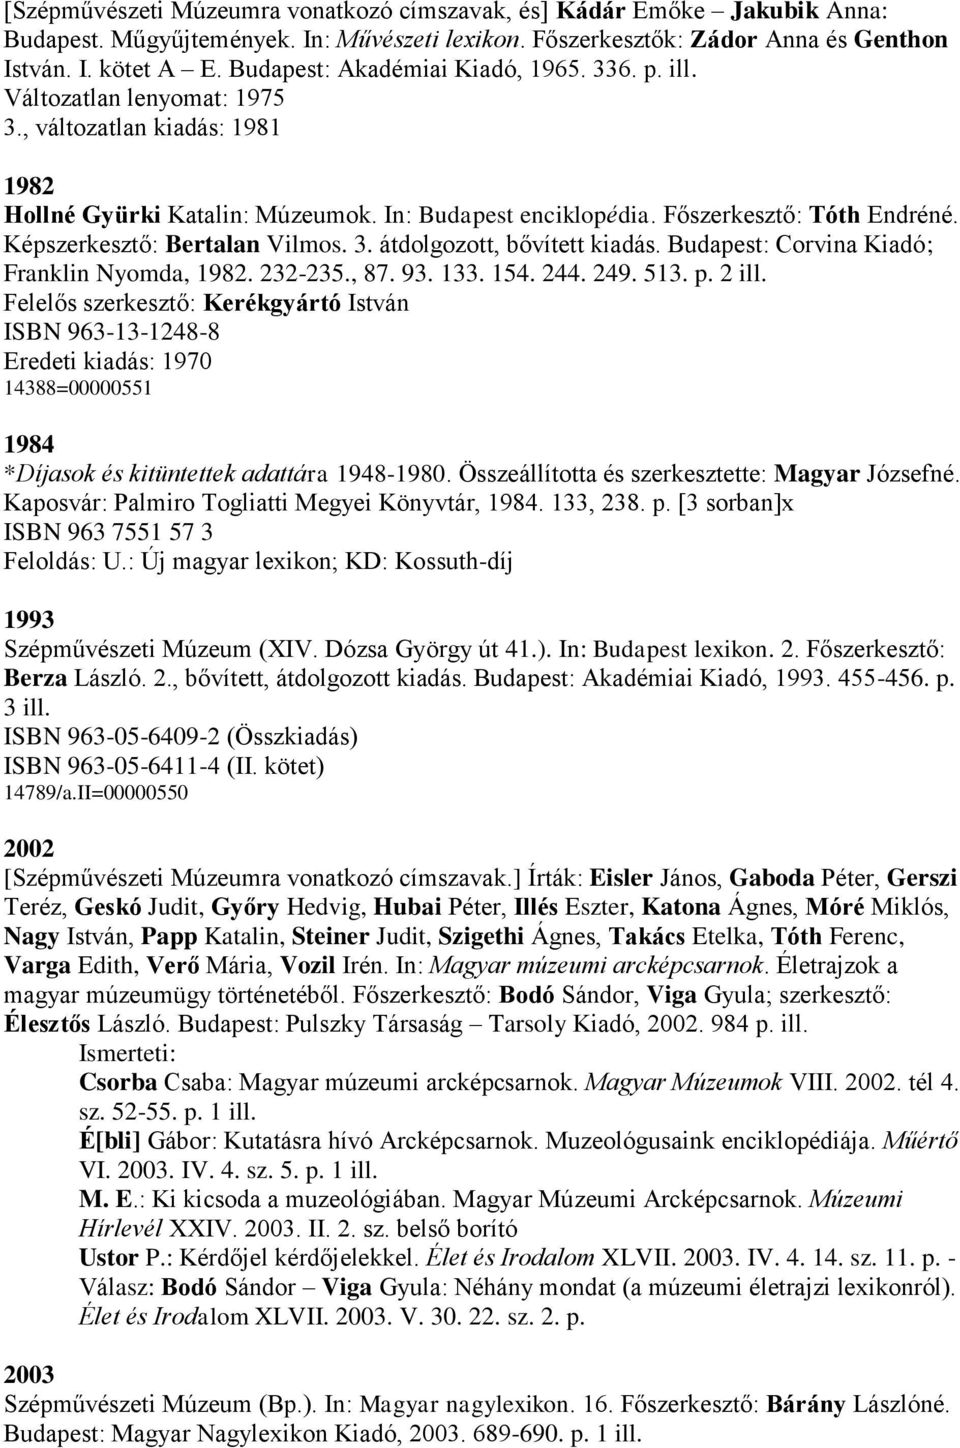 Képszerkesztő: Bertalan Vilmos. 3. átdolgozott, bővített kiadás. Budapest: Corvina Kiadó; Franklin Nyomda, 1982. 232-235., 87. 93. 133. 154. 244. 249. 513. p. 2 ill.